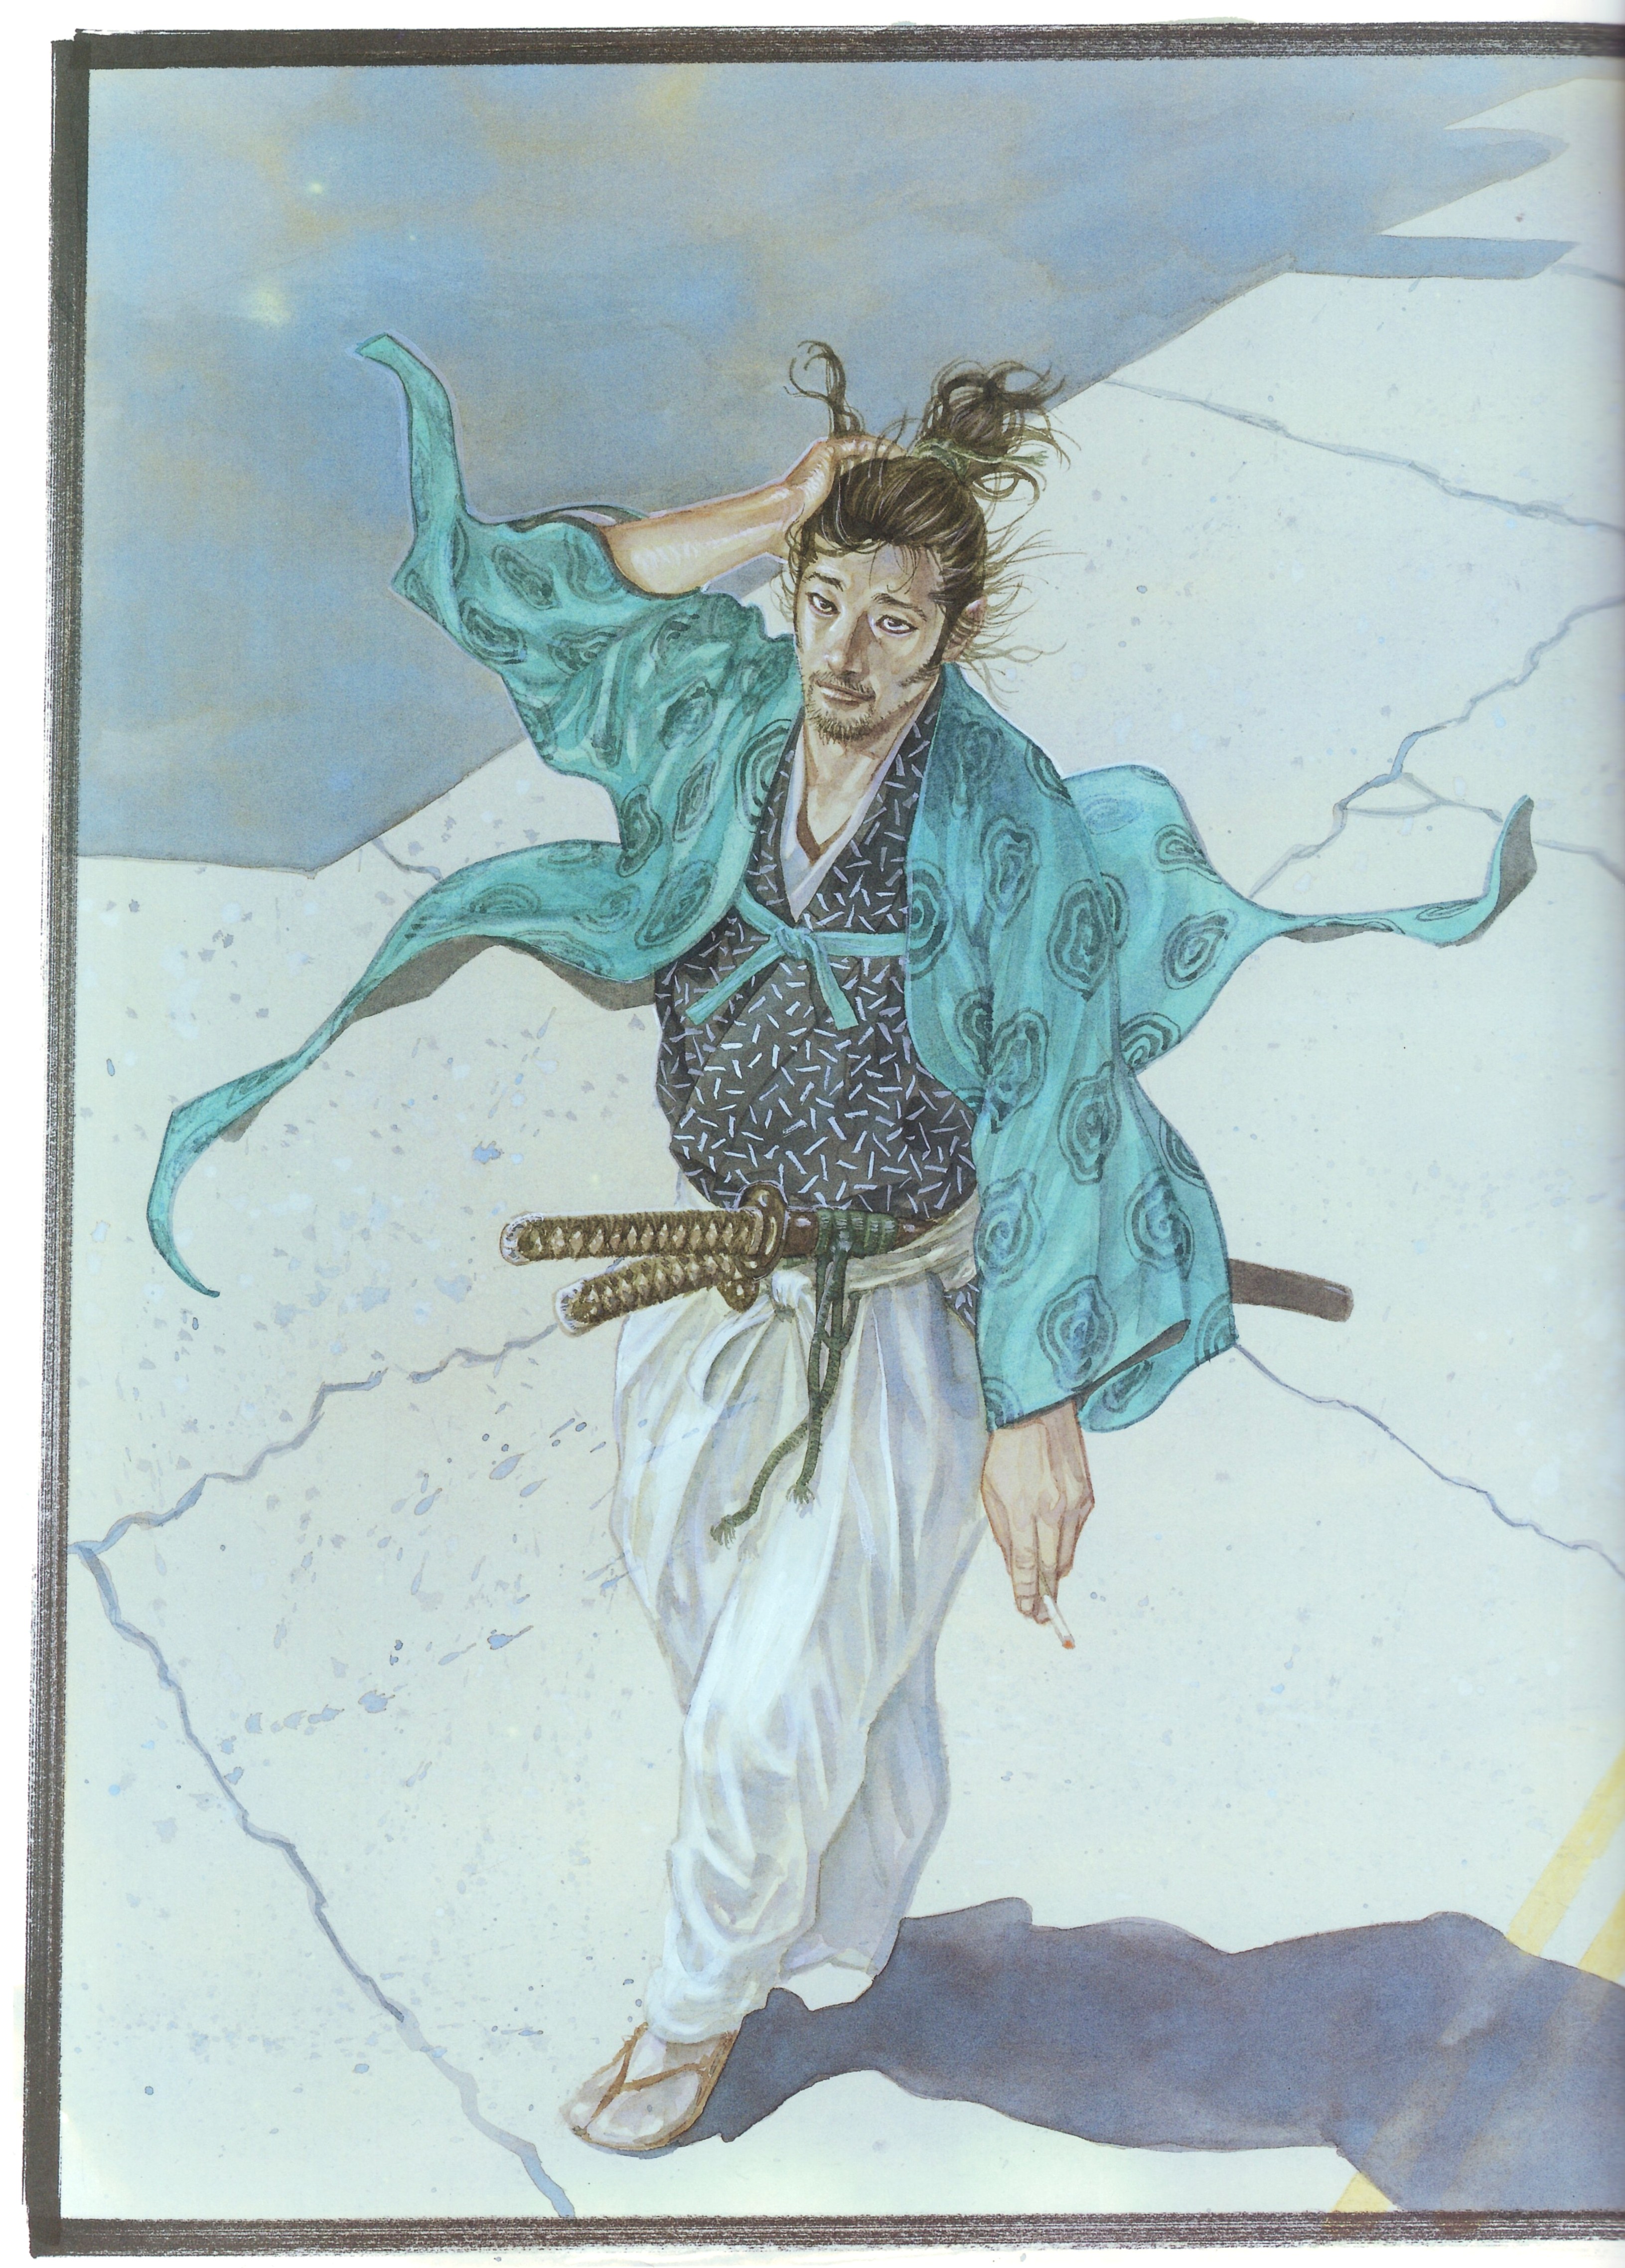 Vagabond Inoue Takehiko Vagabond Water Samurai Watercolor Sword Cyan 3261x4550